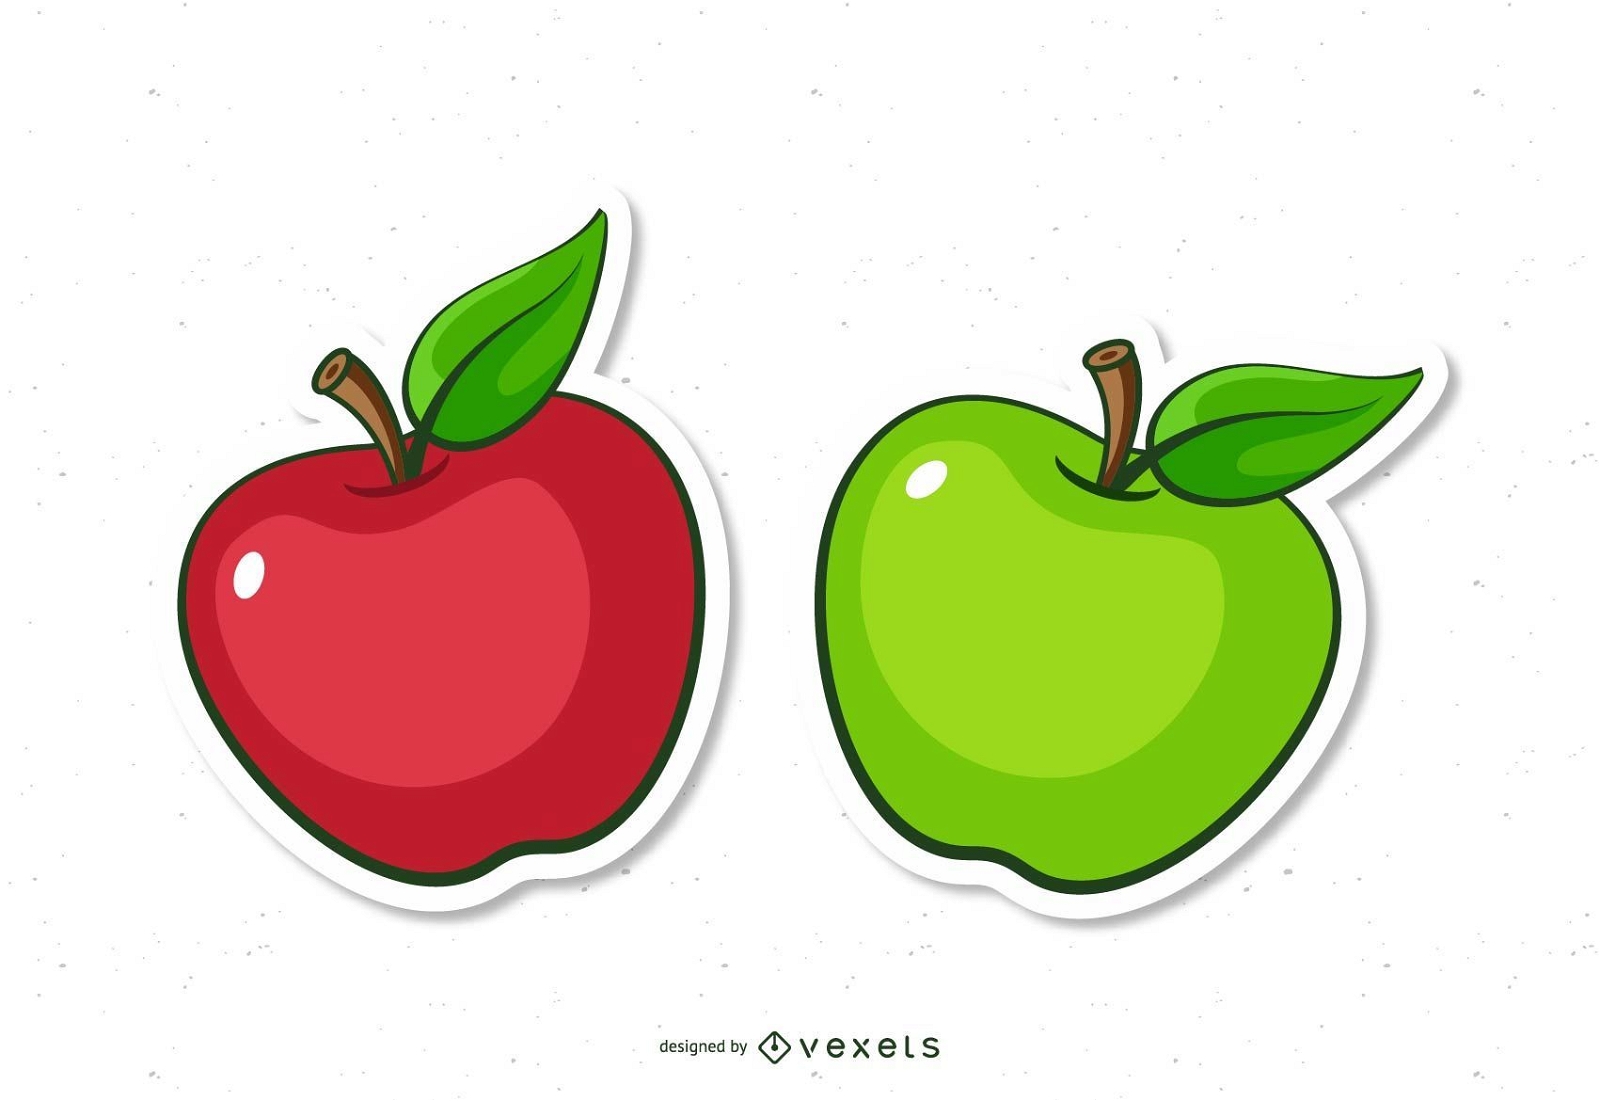 Descarga Vector De Dibujos Animados De Manzana Roja Y Verde